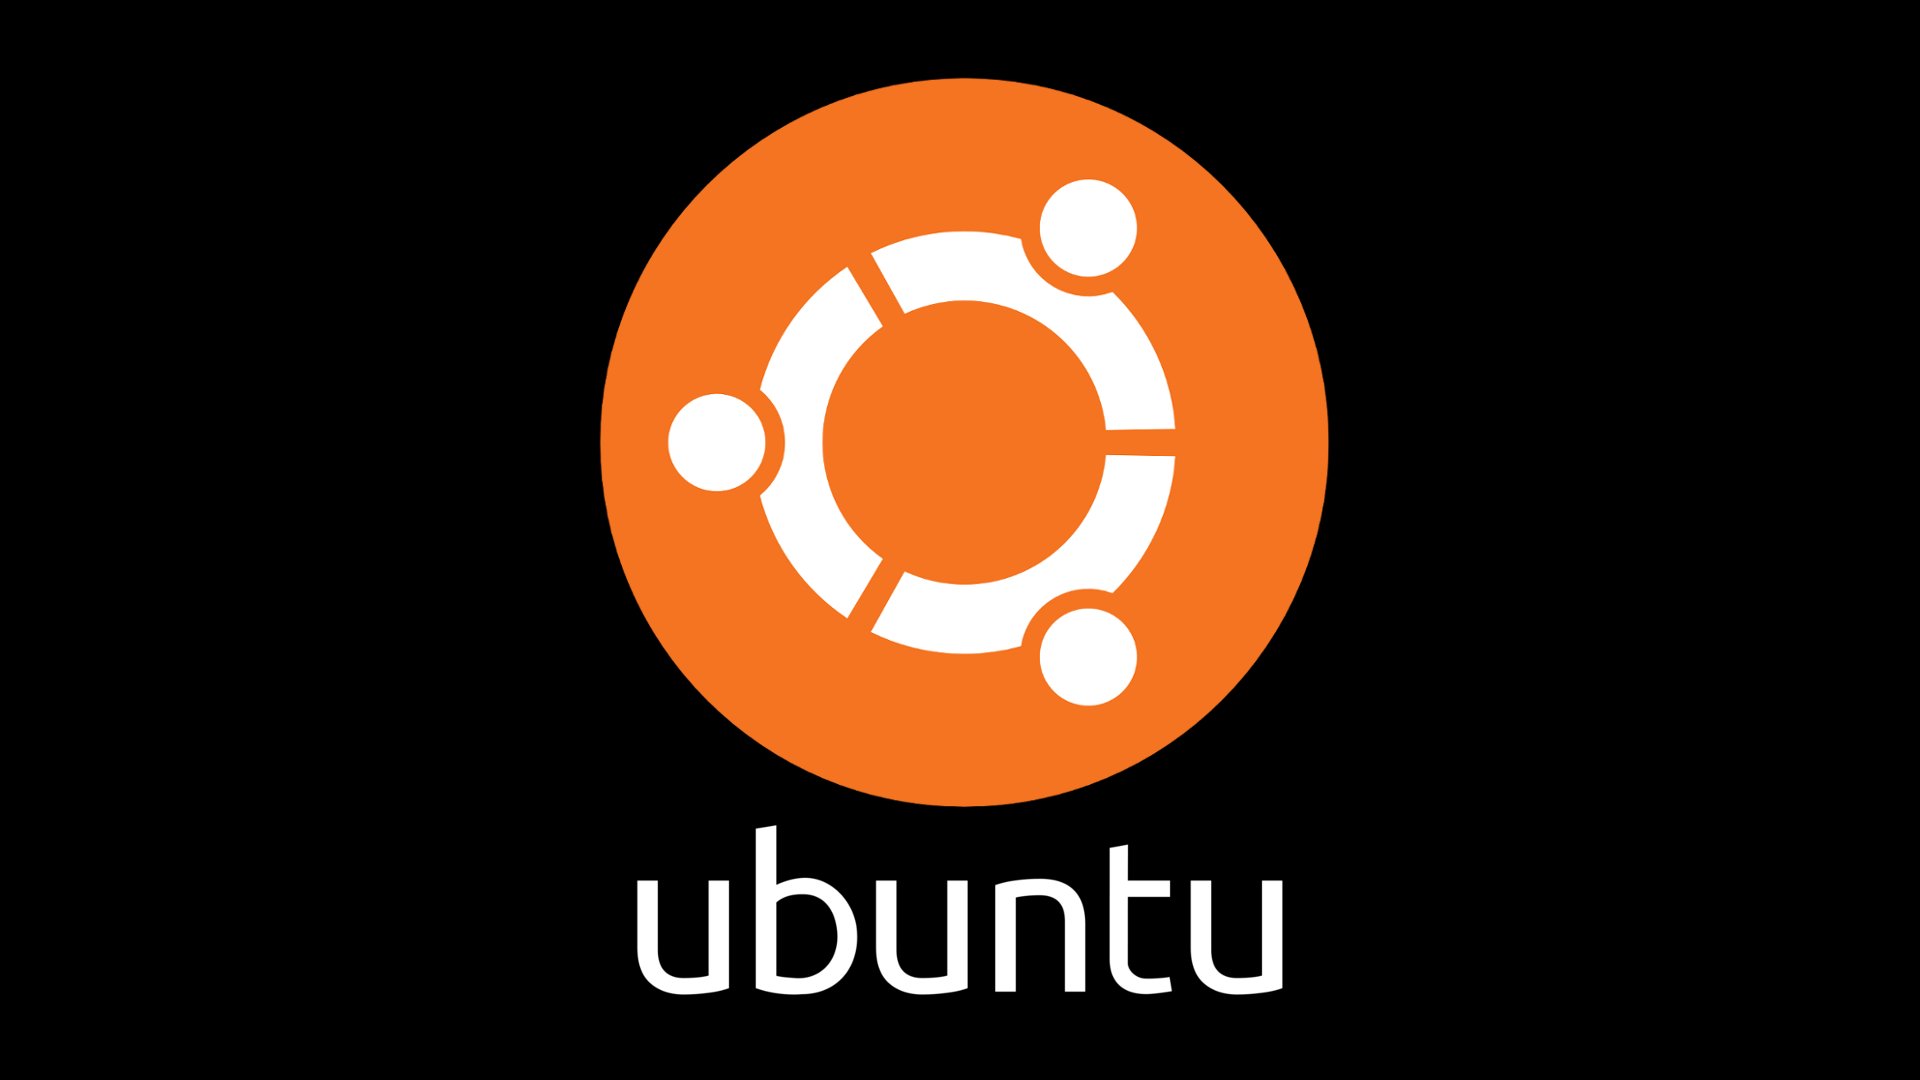 Ubuntu latest version free download